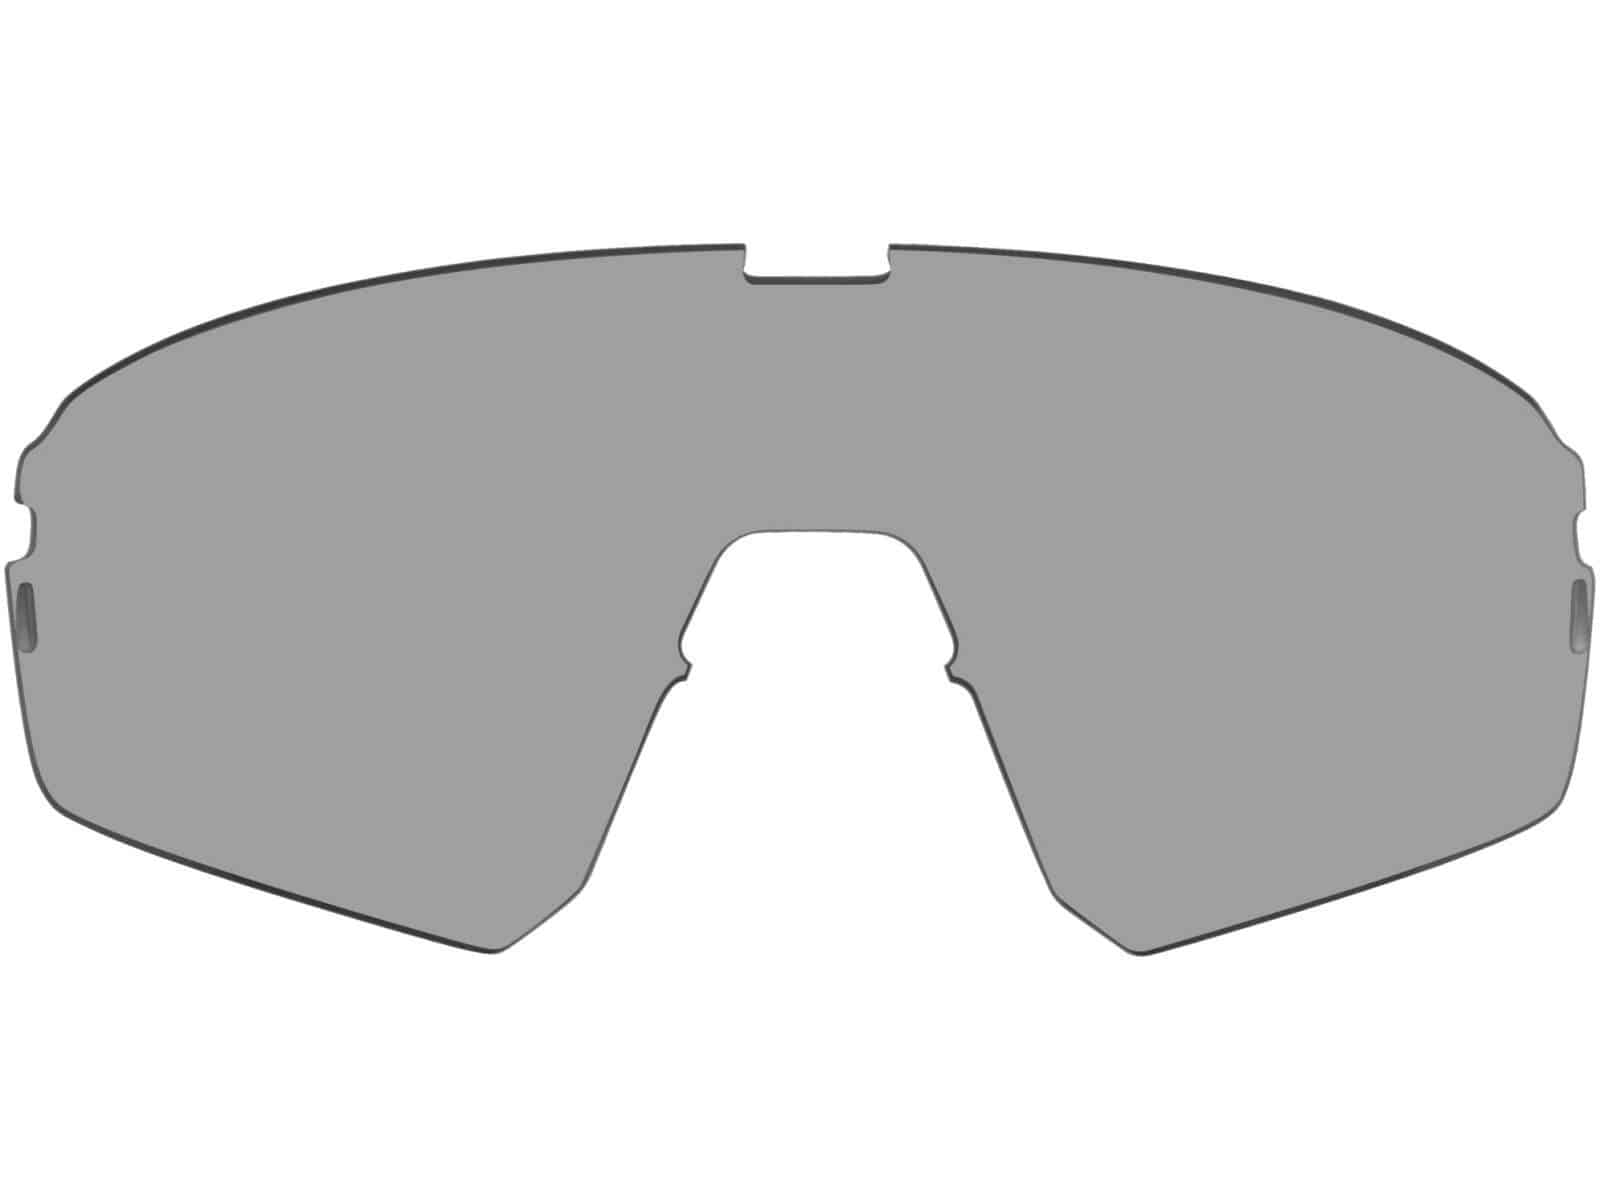 Szkła zapasowe do okularów Force APEX fotochromowe